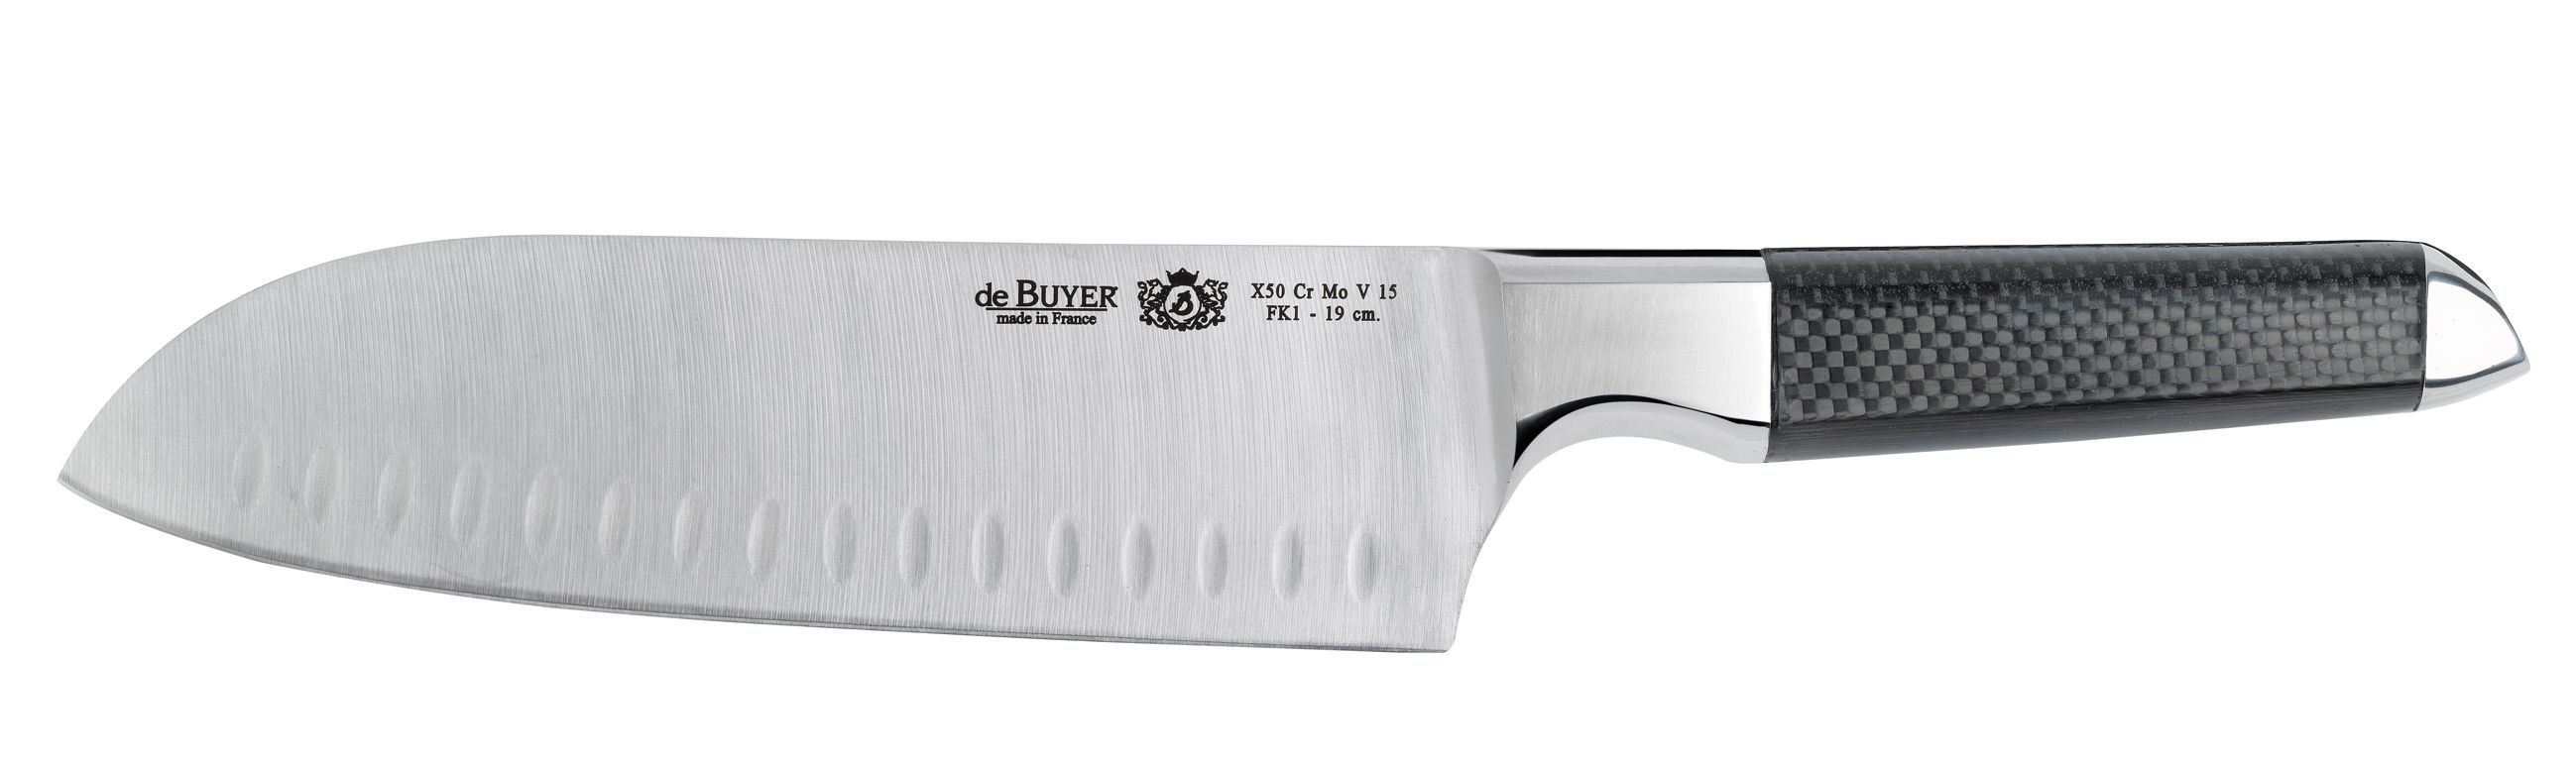 Japonský nůž Santoku Fibre Karbon 1 De Buyer 19 cm - Chefshop.cz